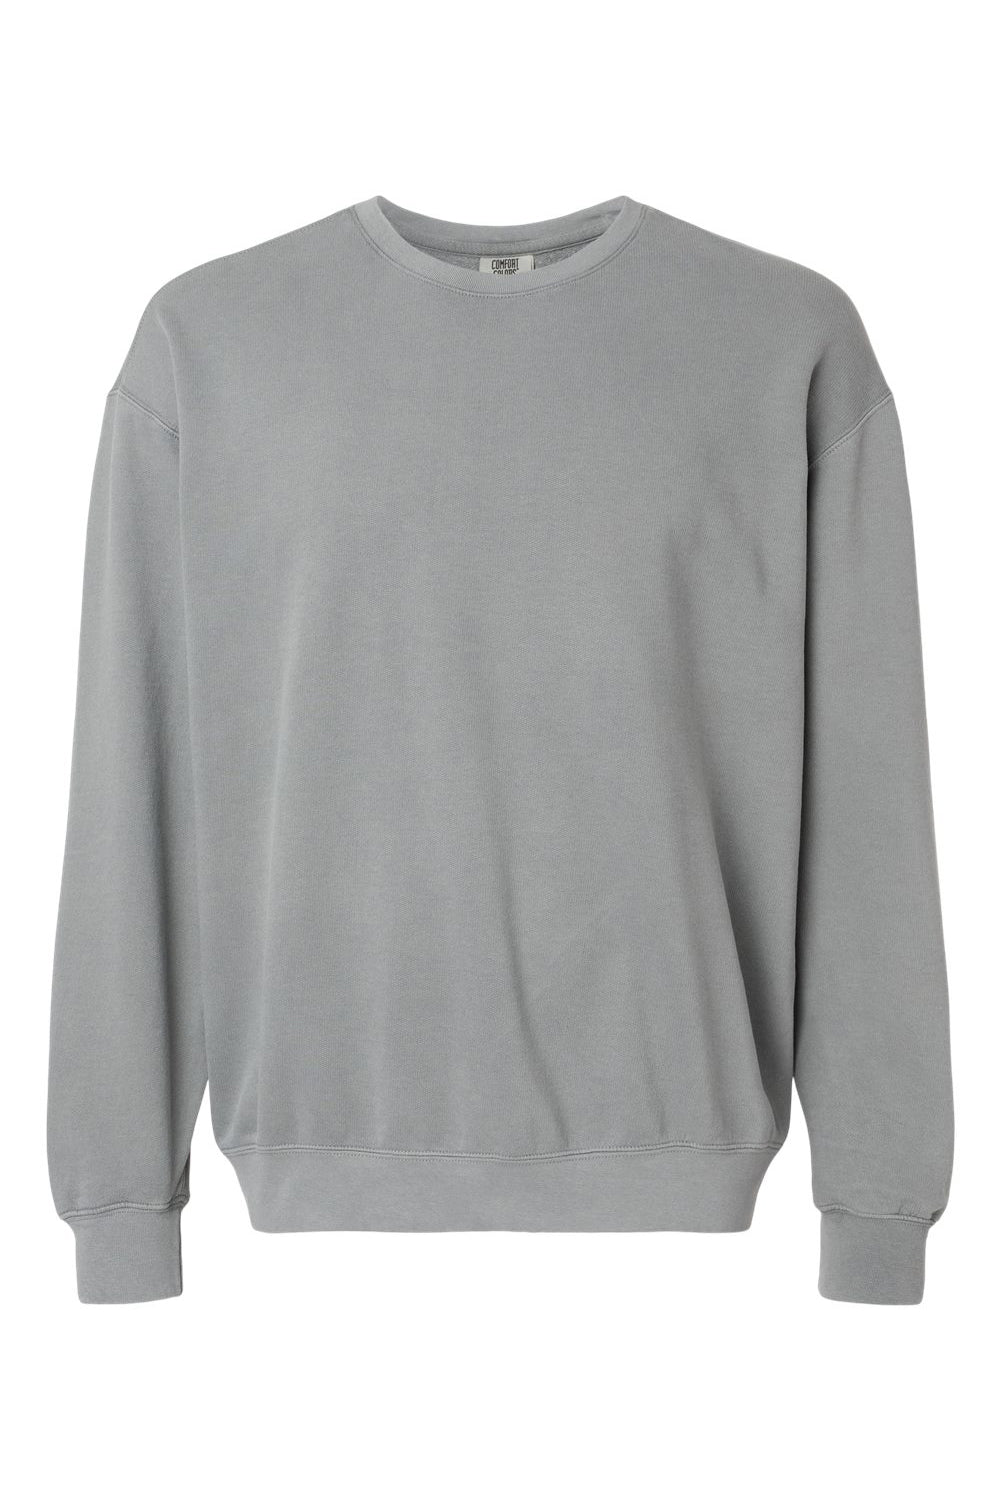 Comfort Colors 1466 Mens Garment Dyed Fleece Crewneck Sweatshirt Grey Flat Front